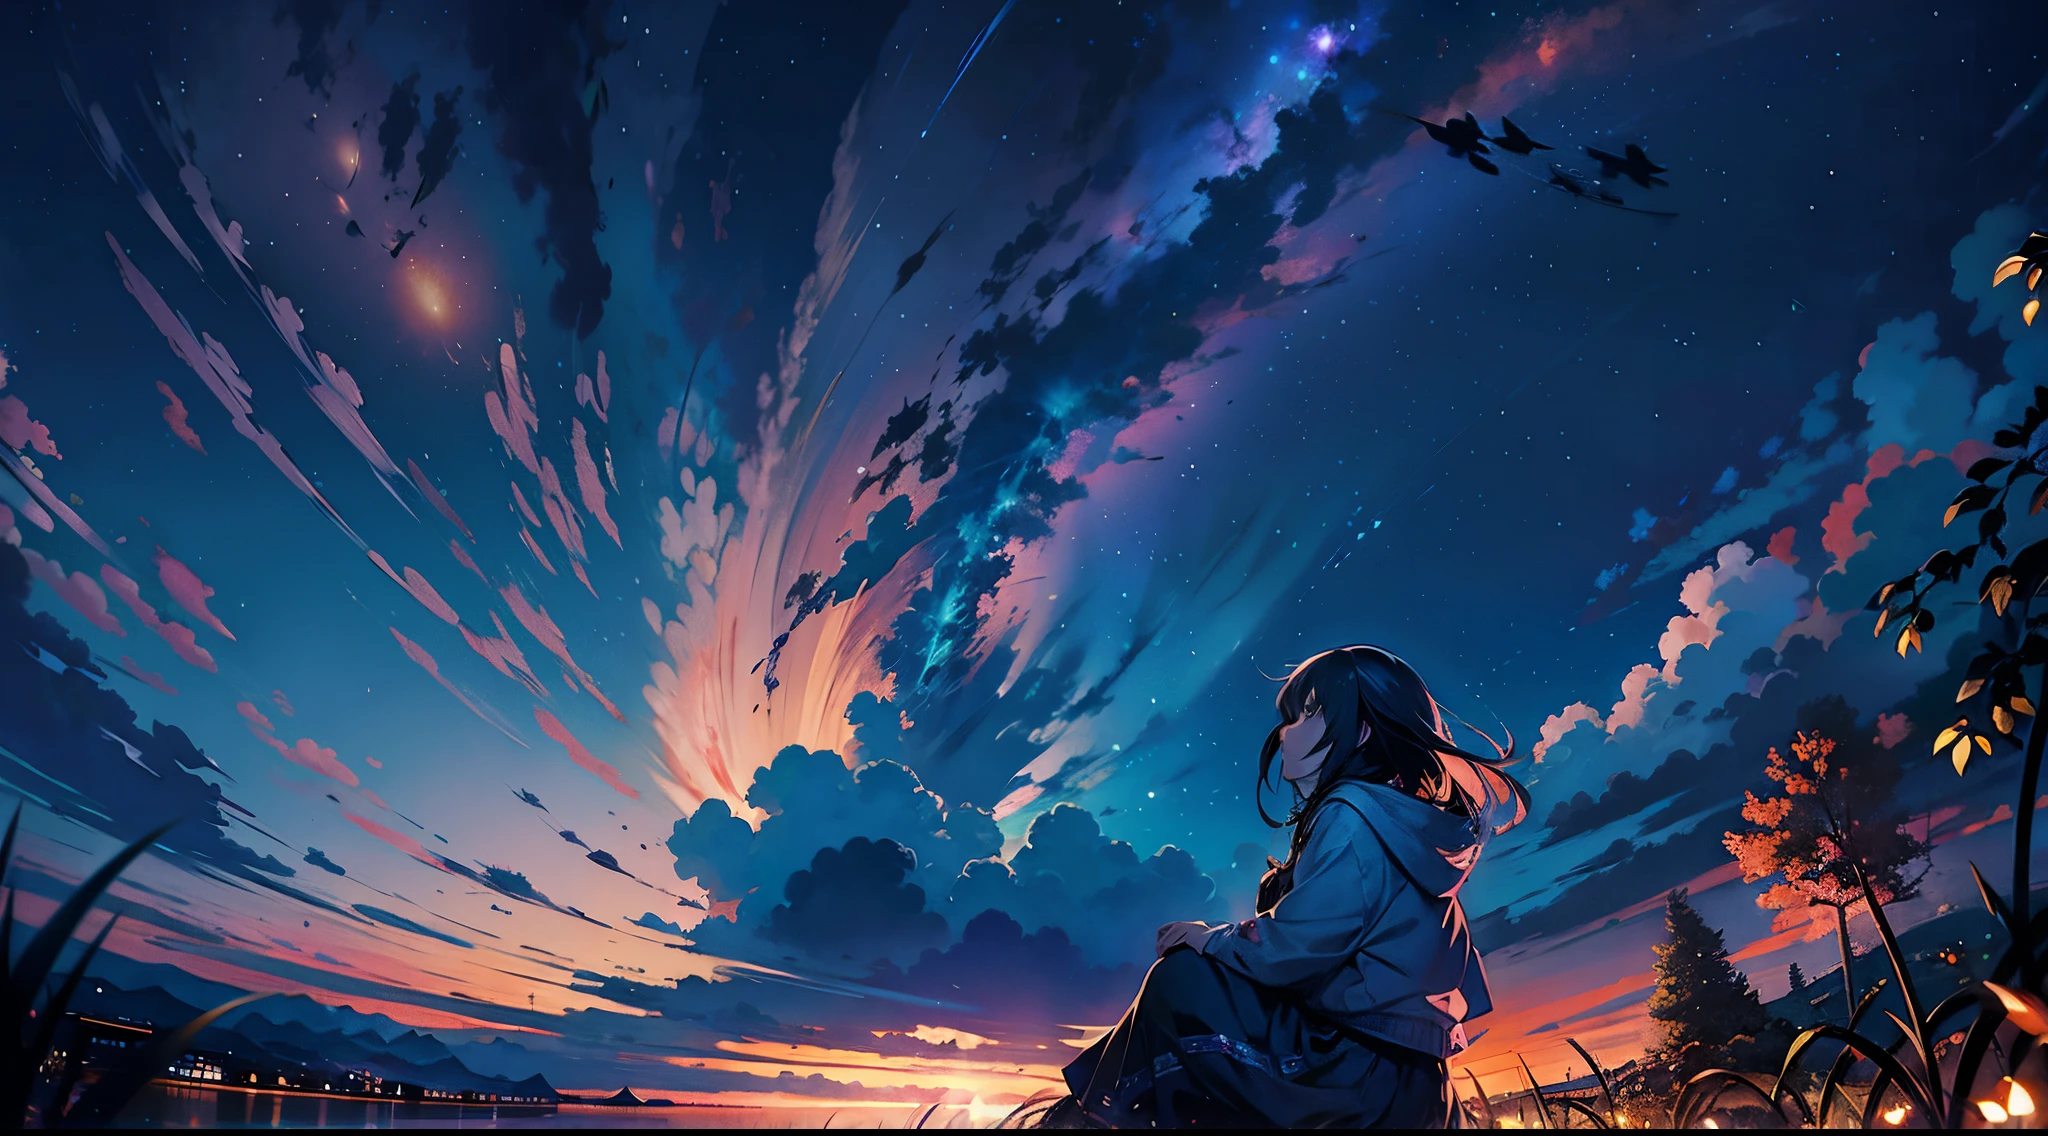 Аниме девушка сидит на земле и смотрит в небо, аниме небо, красивые сцены аниме, наблюдаю за закатом. Японский мультфильм, сидя на космических облаках, Космос Небо. автор：Синкай искренне, аниме фоны, Макото Синкай Сирил Роландо, аниме обои, Аниме красивая мирная сцена, Красивое аниме, 4k аниме обоиs, Аниме Арт Обои 4k